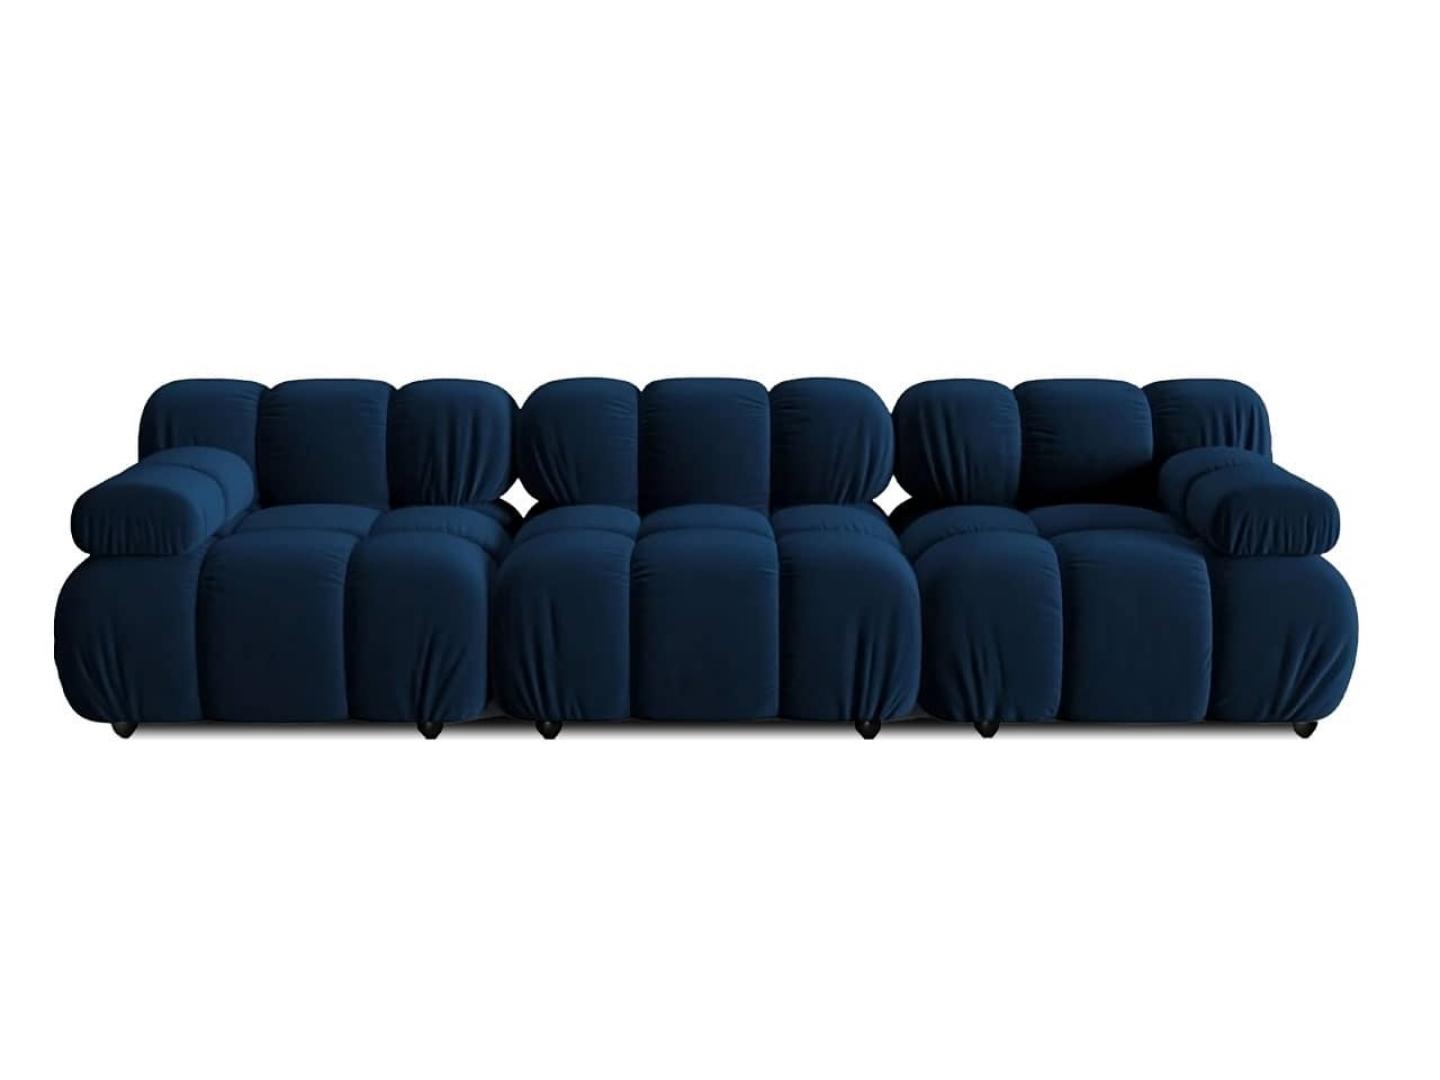 3 seater modern sofa blue - Lux Furniture